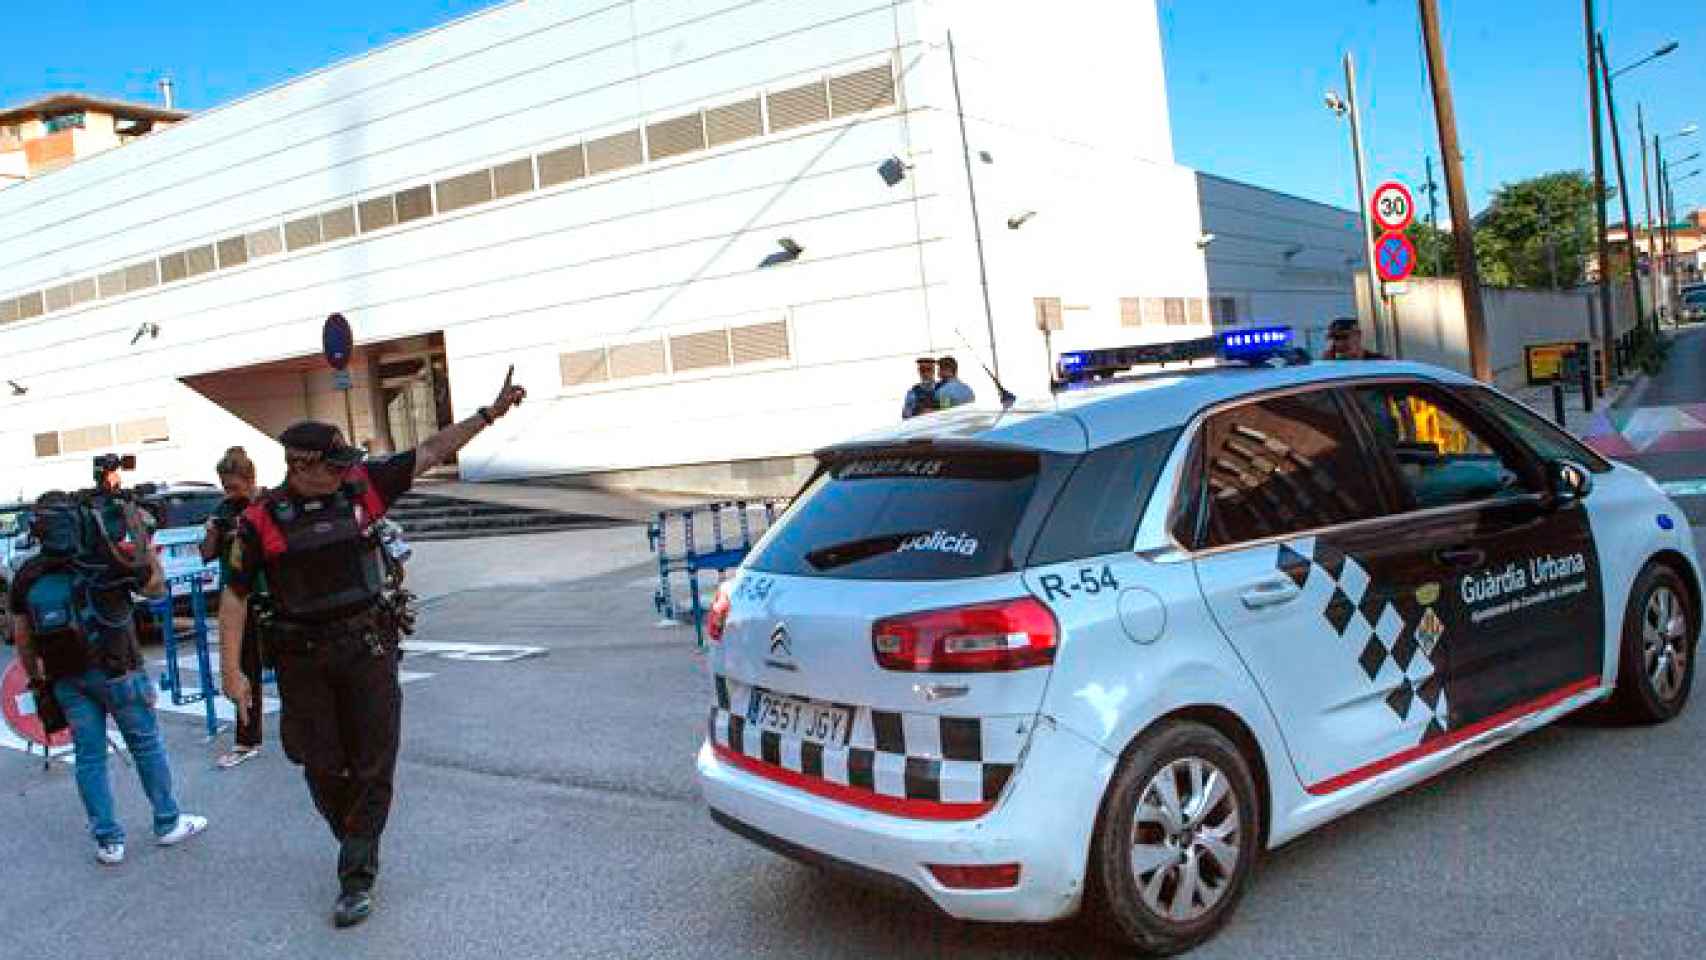 Comisaría de Cornellà de Llobregat donde un hombre ha sido abatido esta mañana al intentar acceder al edificio con un cuchillo / EFE